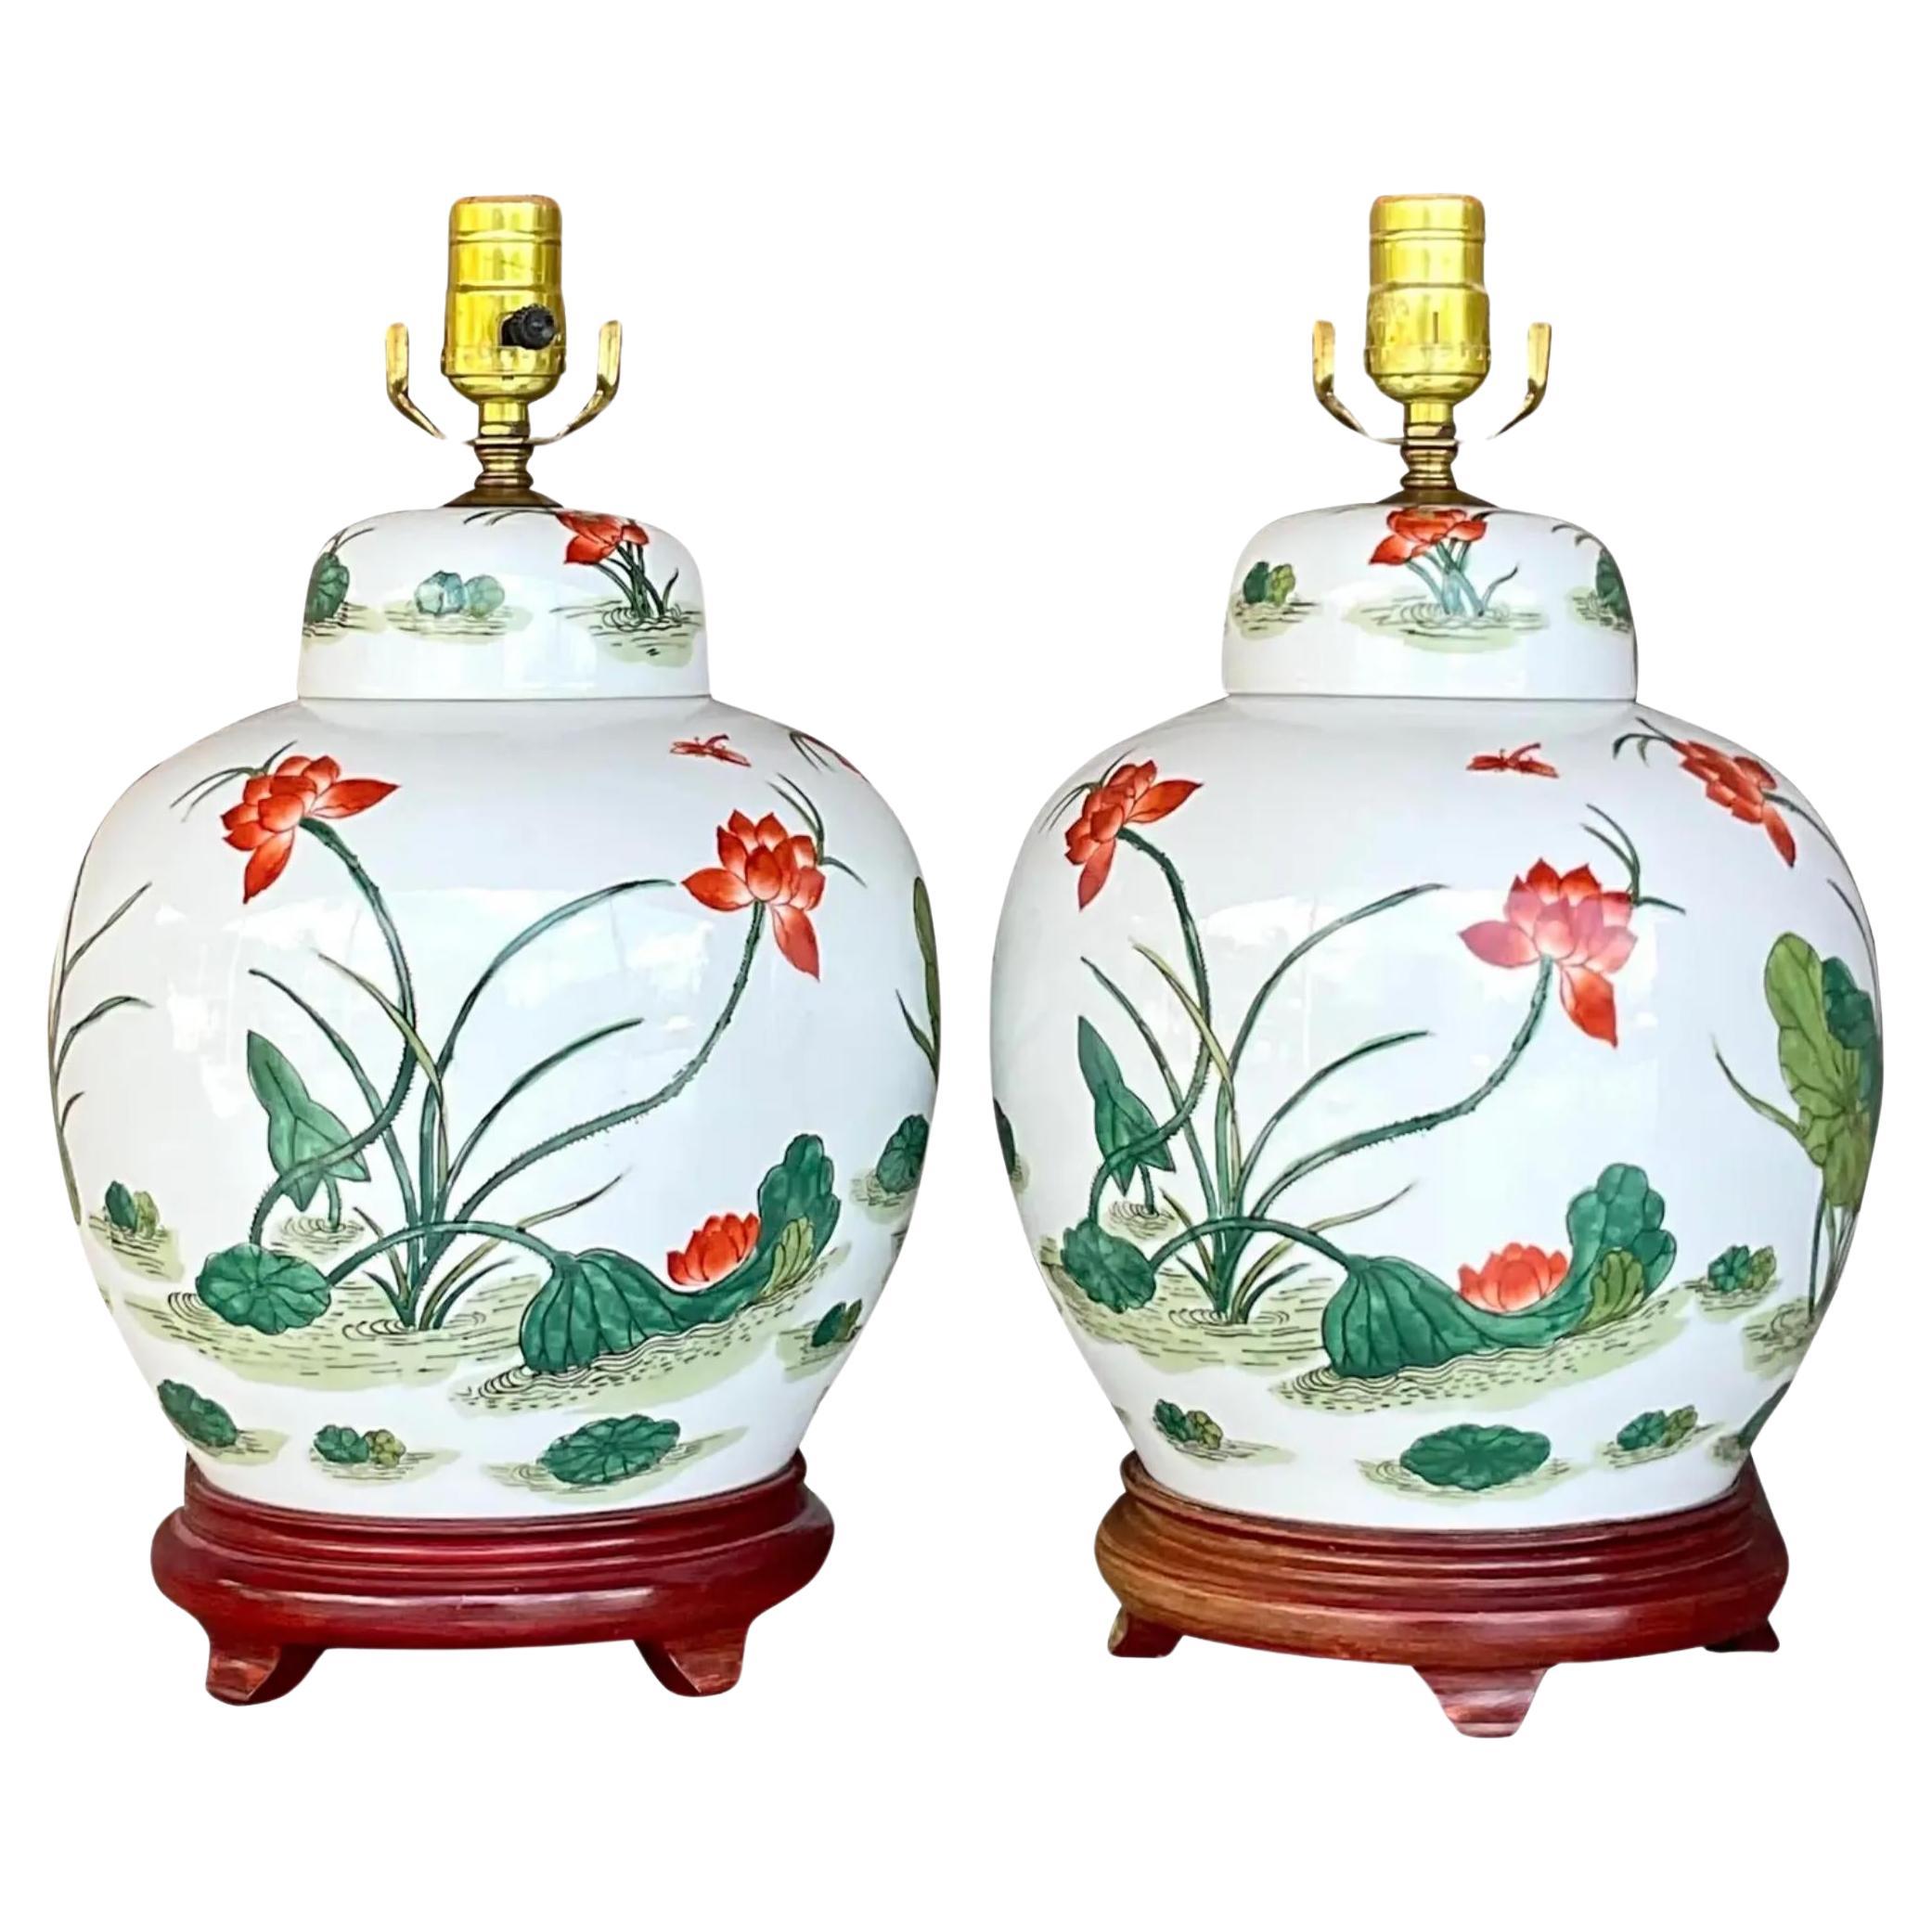 Vintage Asian Glazed Ceramic Ginger Jar Lamps - a Pair For Sale